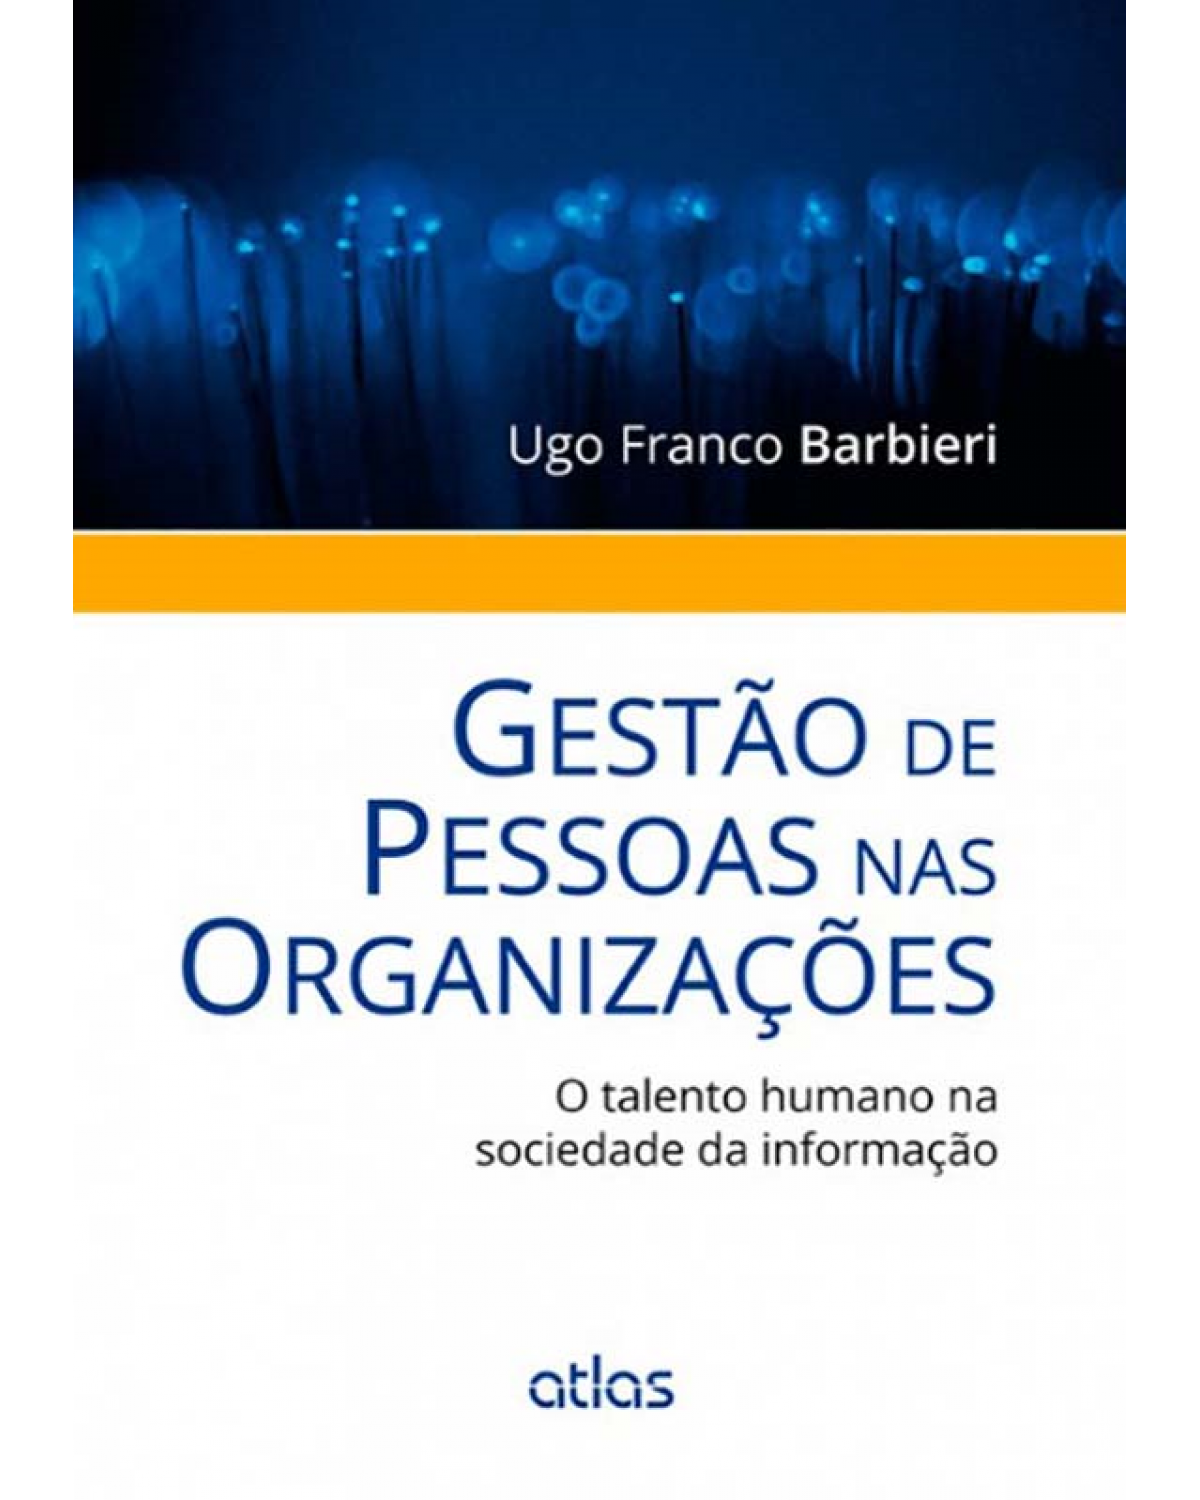 Gestão de pessoas nas organizações - O talento humano na sociedade da informação - 1ª Edição | 2014